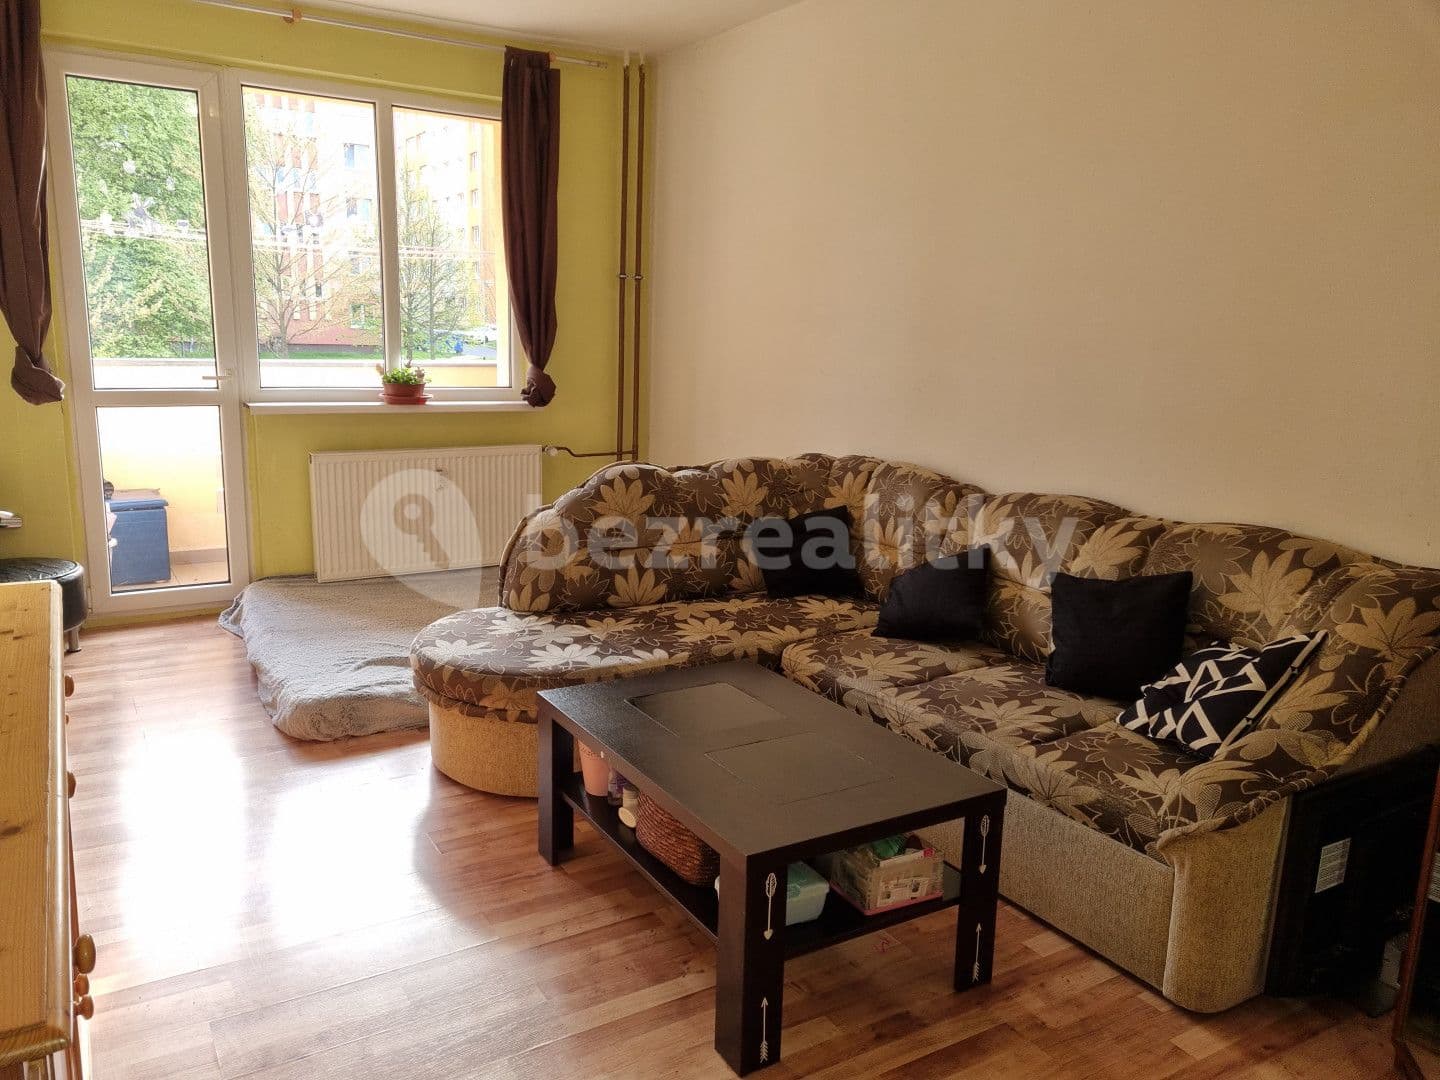 2 bedroom flat for sale, 51 m², ČSA, Chodov, Karlovarský Region